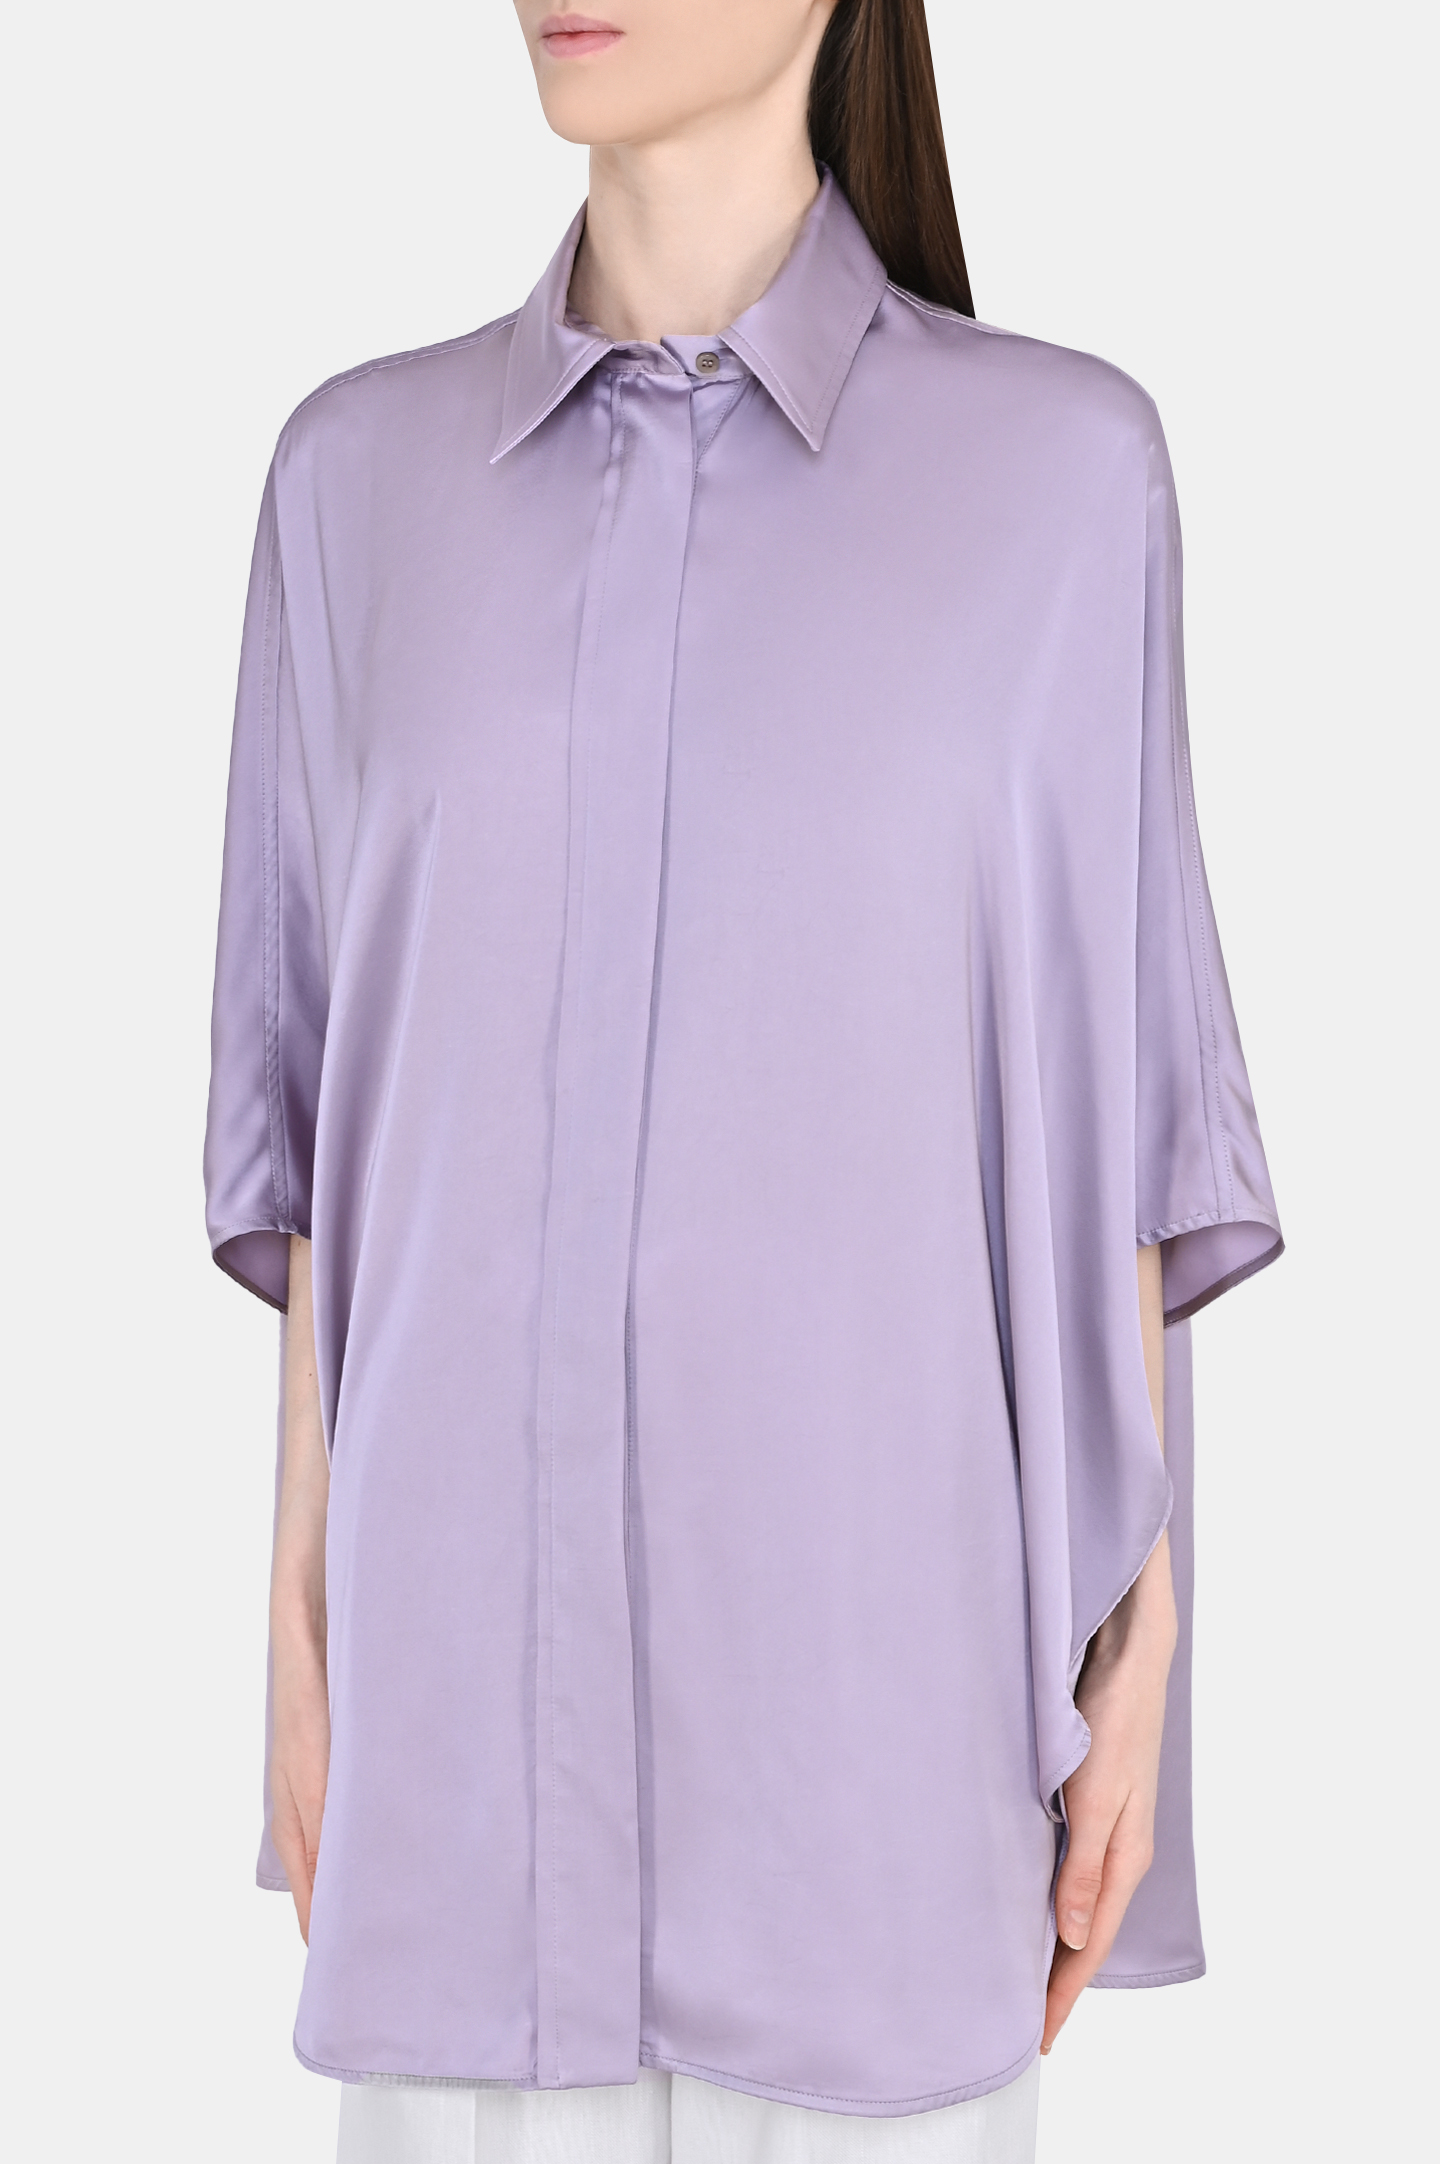 Блуза BRUNELLO  CUCINELLI ML172B1091, цвет: Сиреневый, Женский